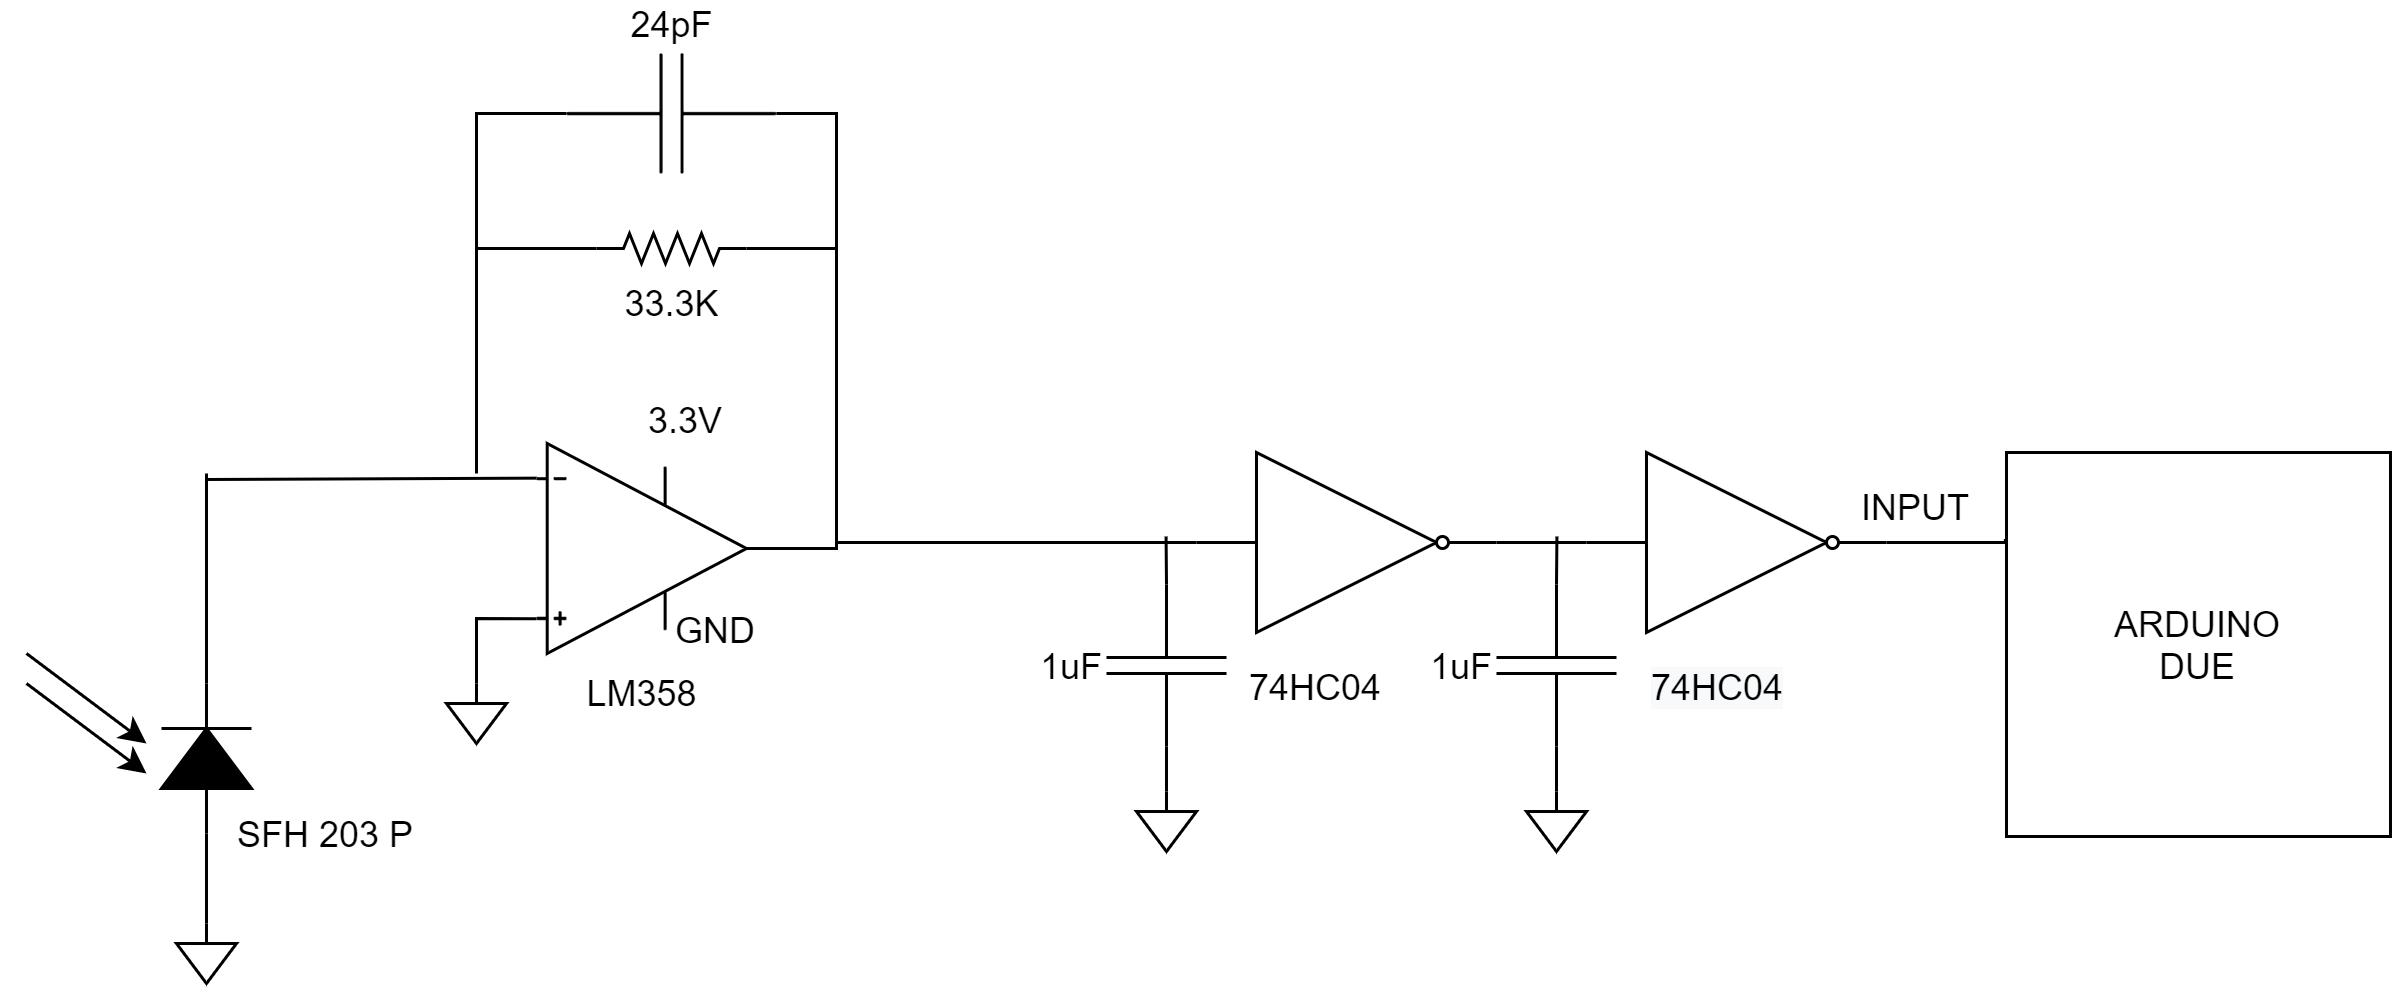 RX schematic